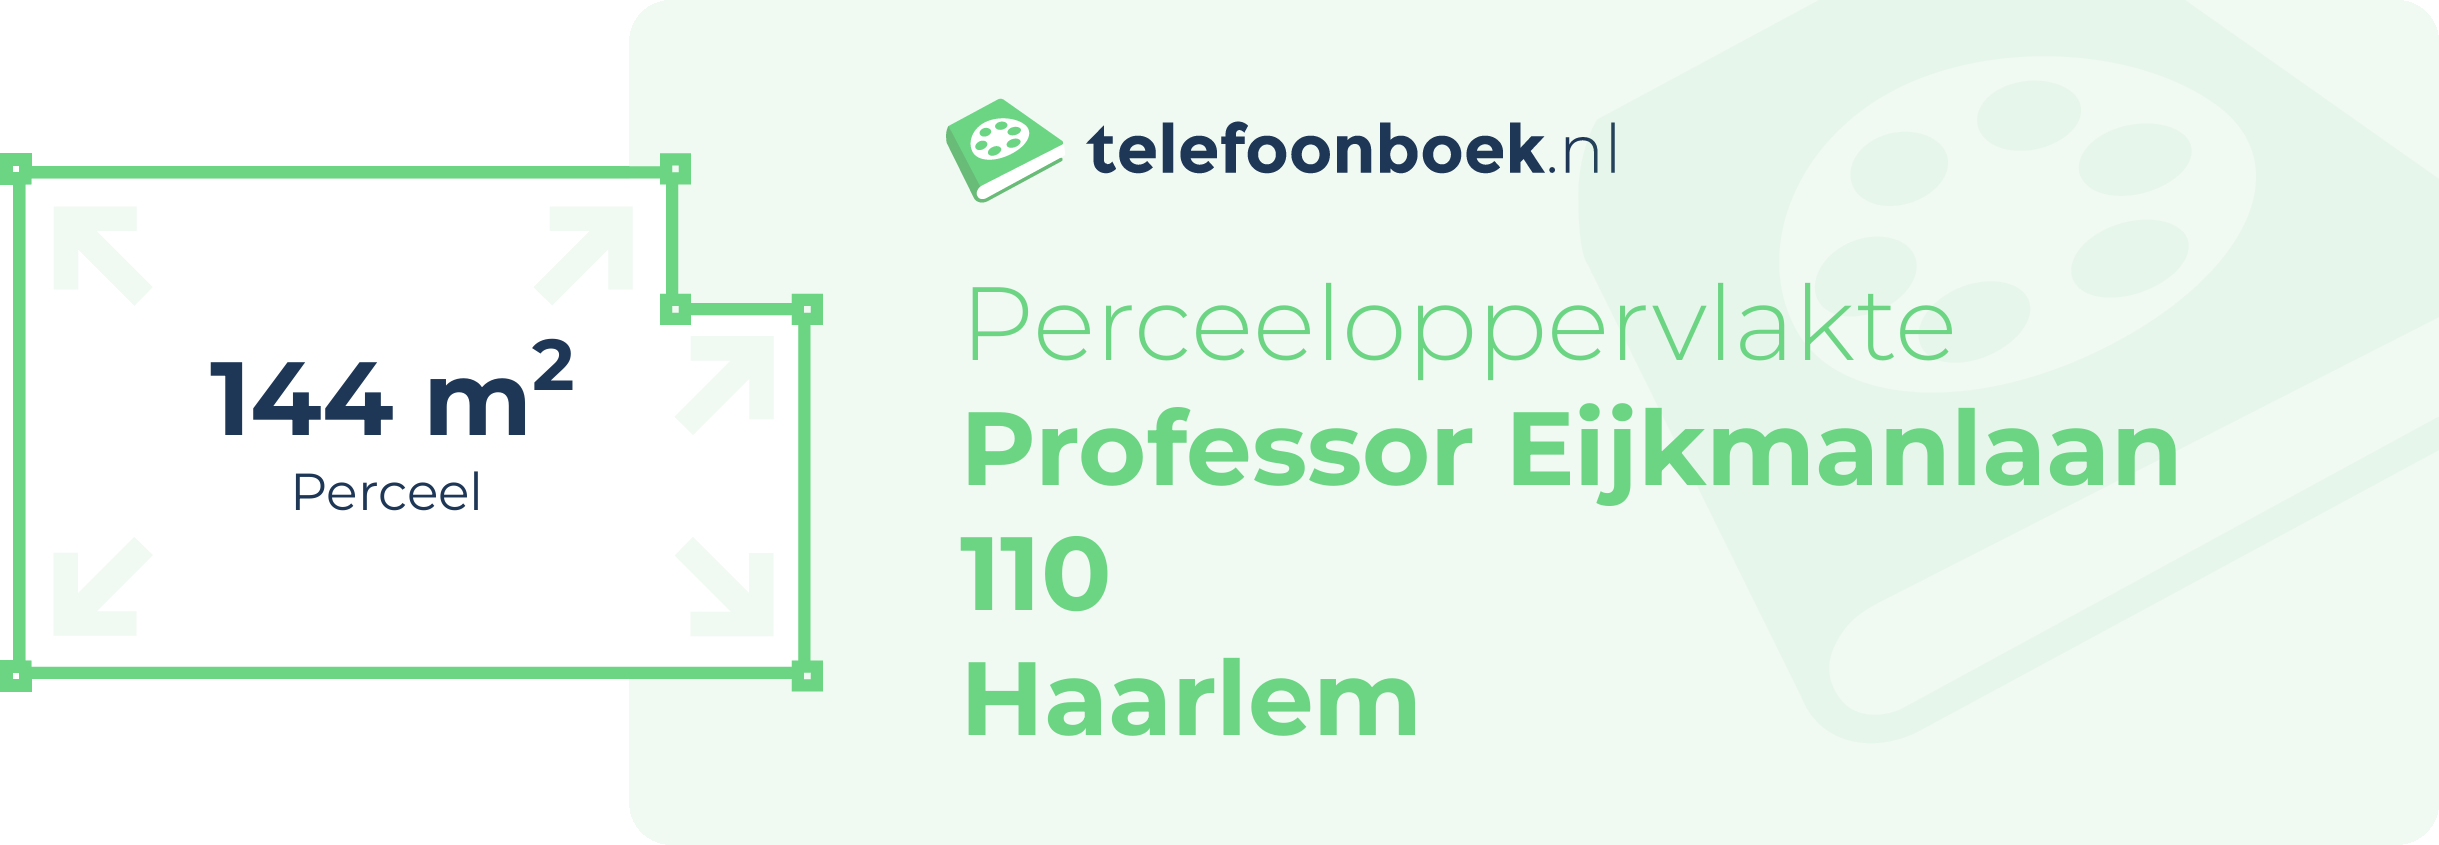 Perceeloppervlakte Professor Eijkmanlaan 110 Haarlem